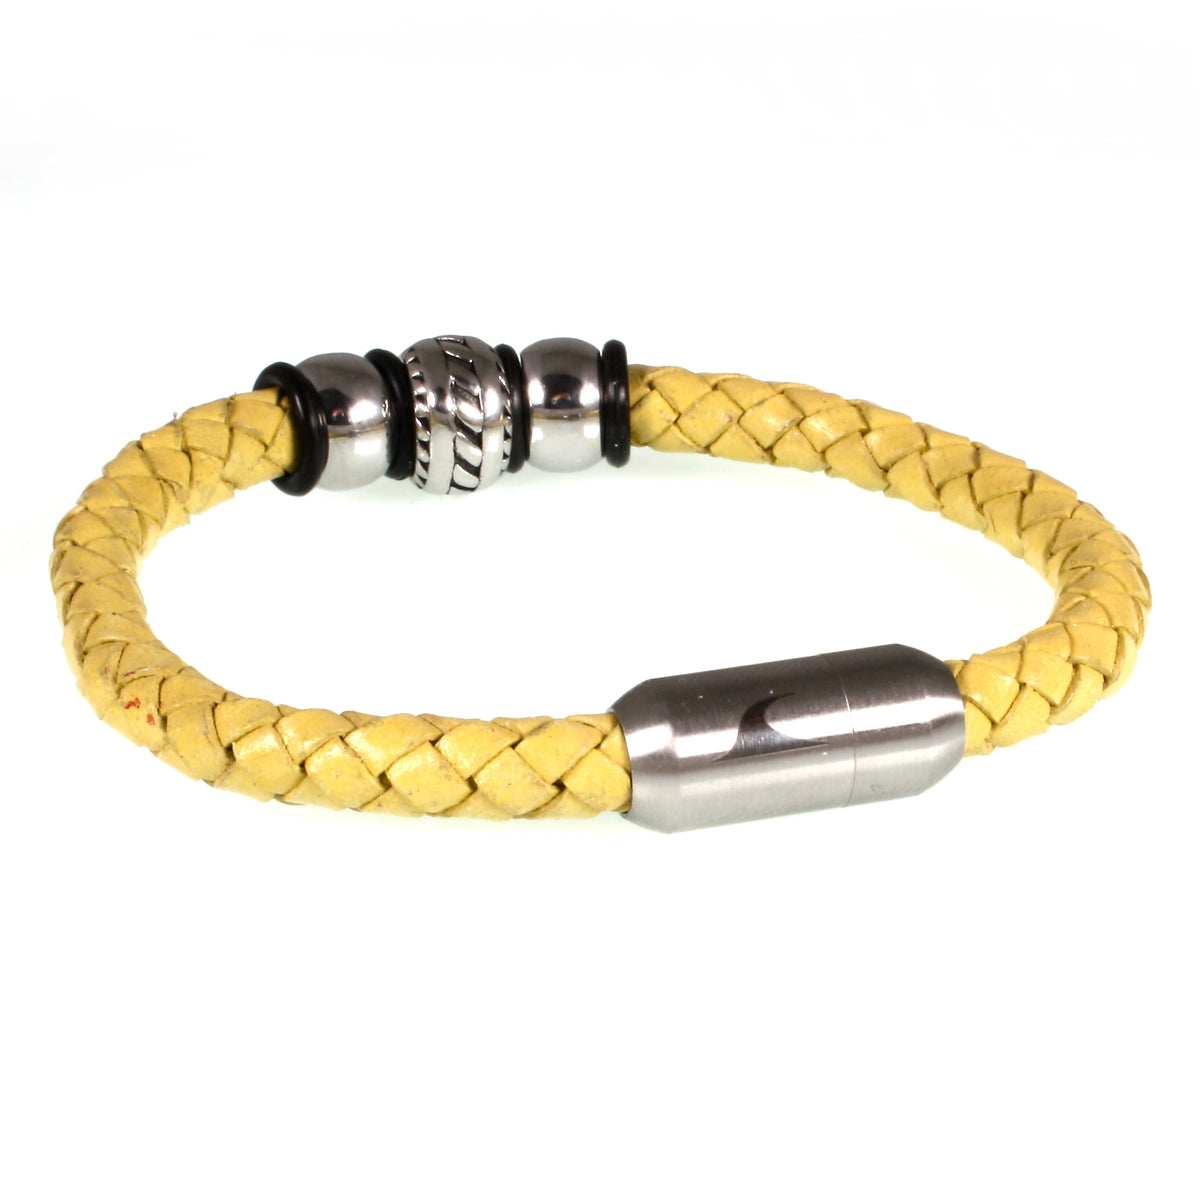 Herren-Leder-armband-steel-gelb-silber-geflochten-Edelstahlverschluss-vorn-wavepirate-shop-f1